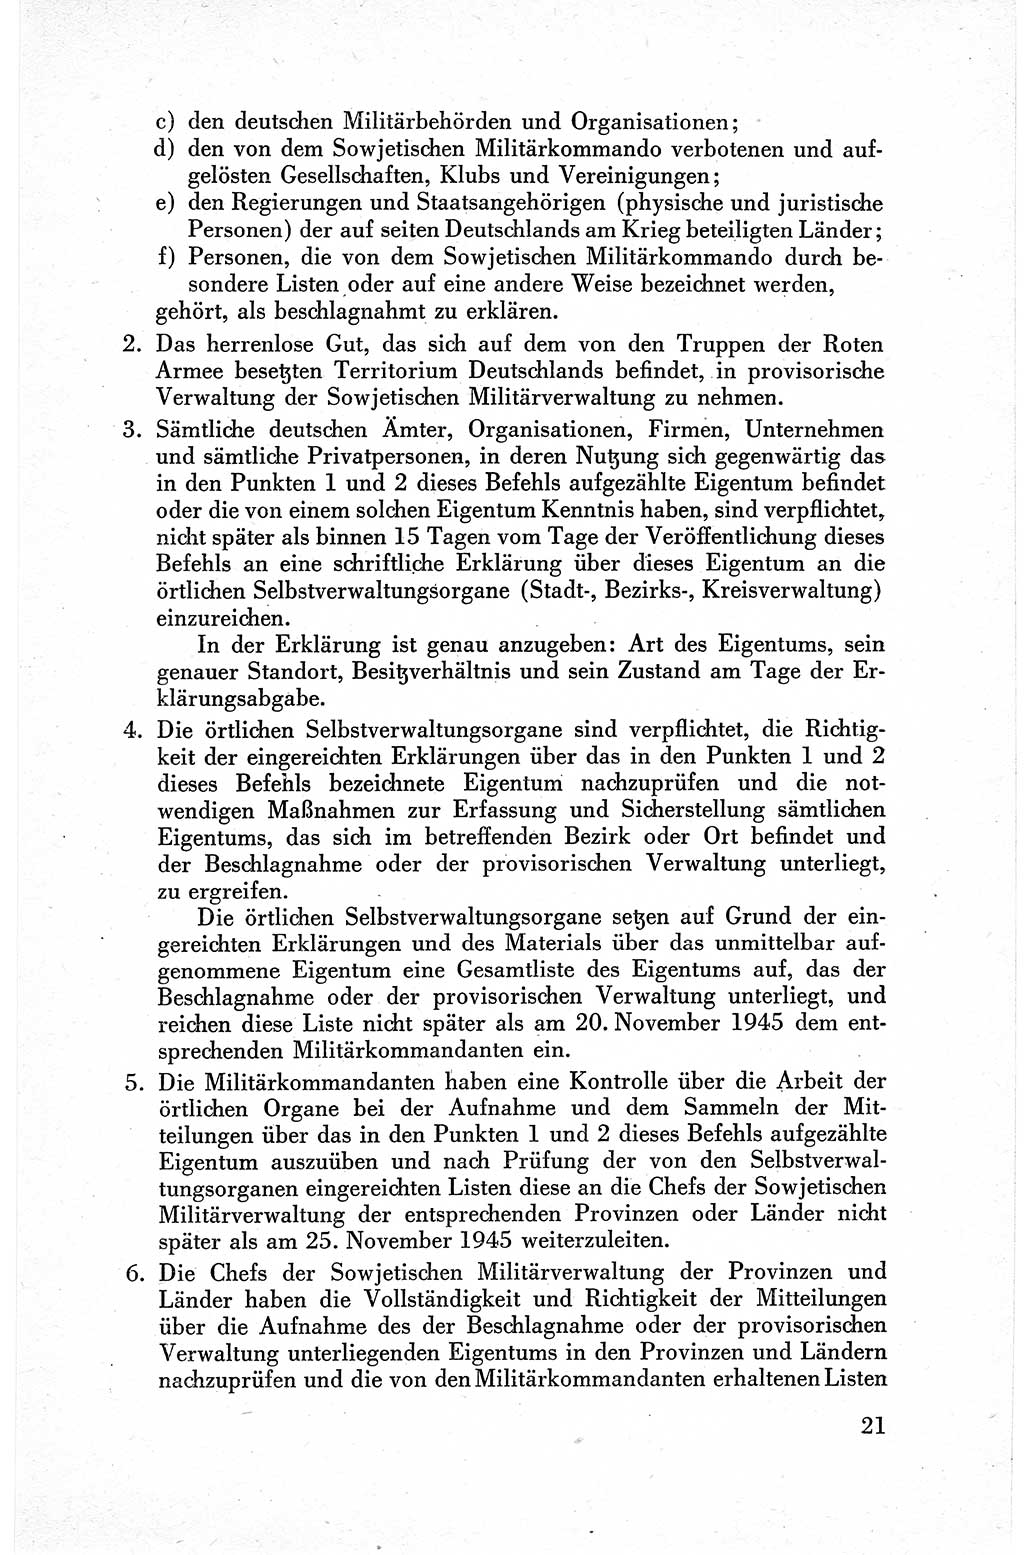 Befehle des Obersten Chefs der Sowjetischen Miltärverwaltung (SMV) in Deutschland - Aus dem Stab der Sowjetischen Militärverwaltung in Deutschland 1945, Seite 21 (Bef. SMV Dtl. 1945, S. 21)